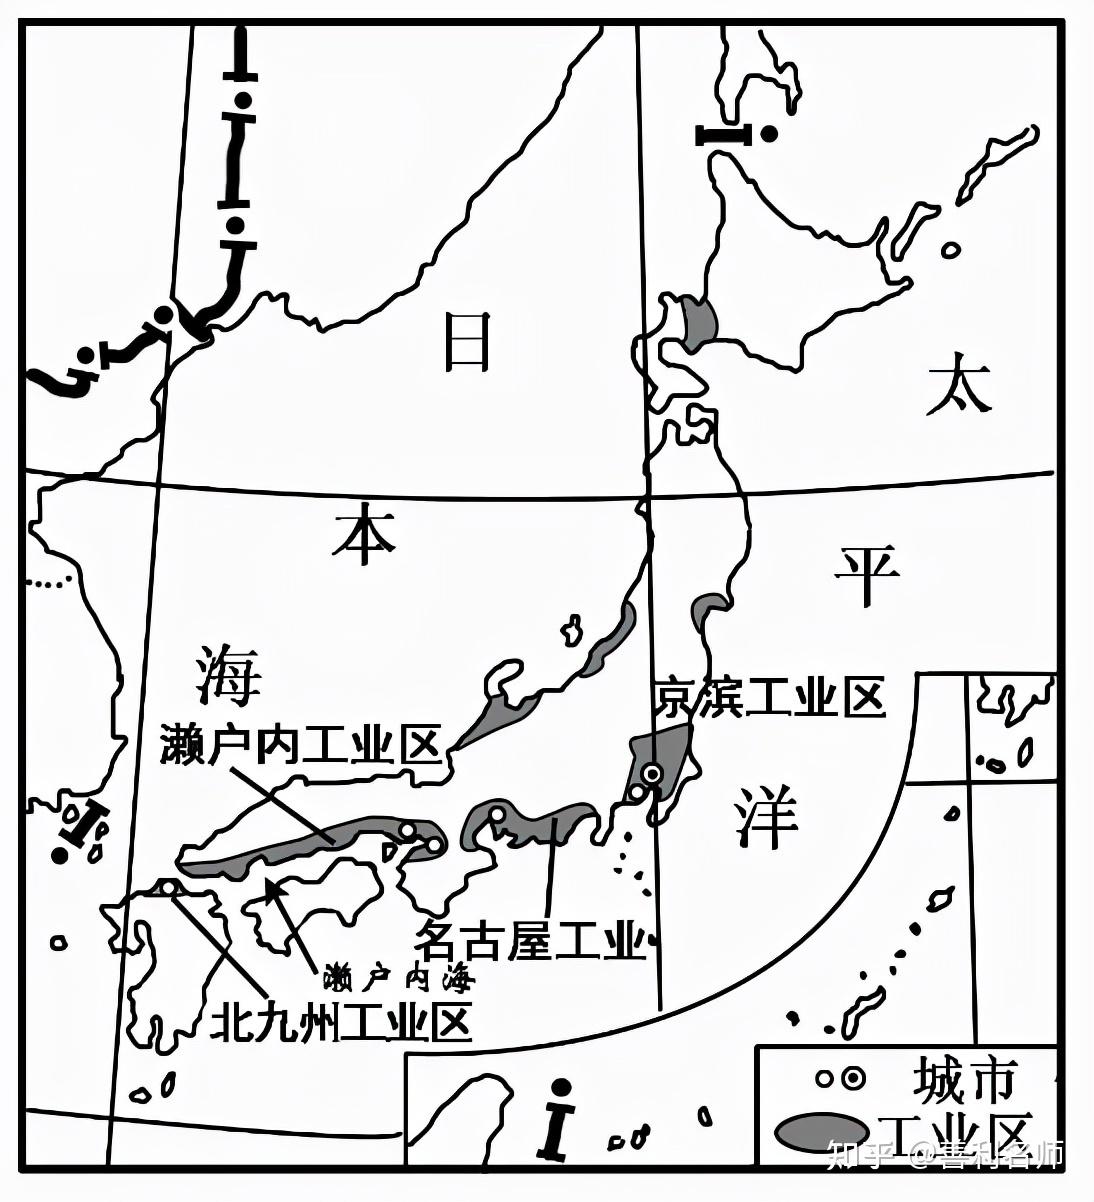 【学法指导】区域地理高频考点 第8讲 日本知识点总结!